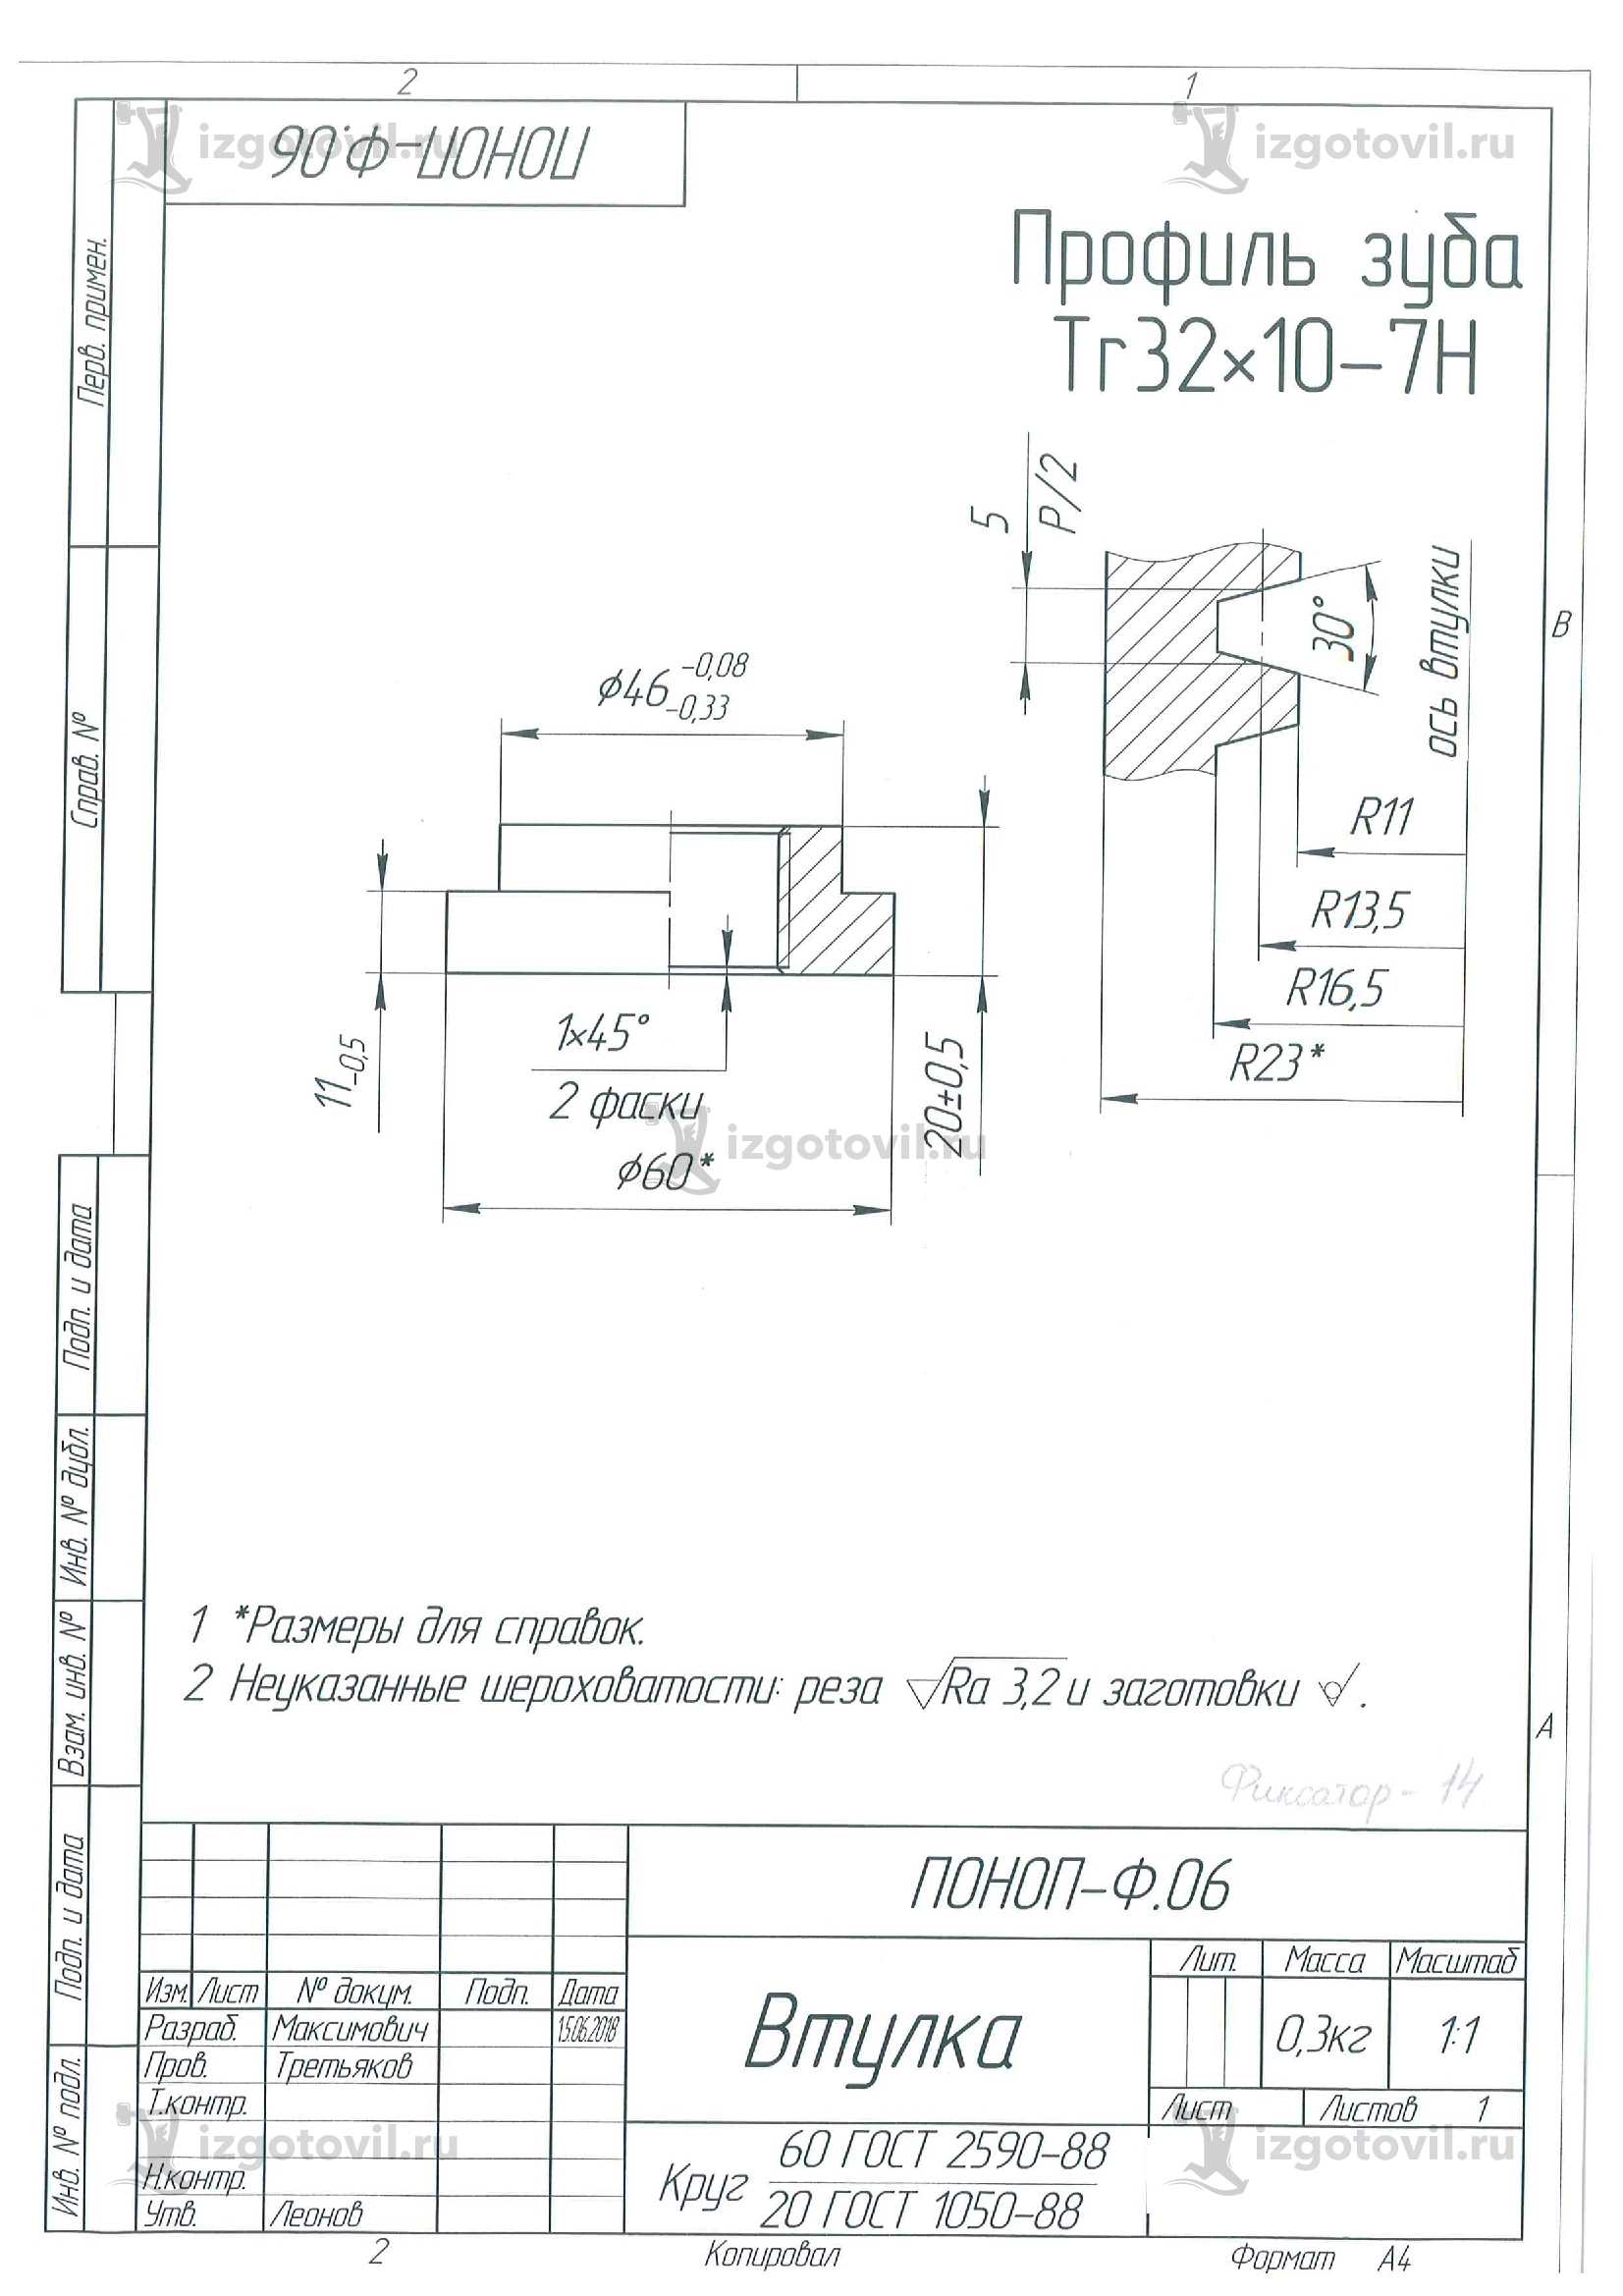 Изготовление деталей по чертежам  (детали с круглой резьбой Rd по DIN 405 или DIN 20400)